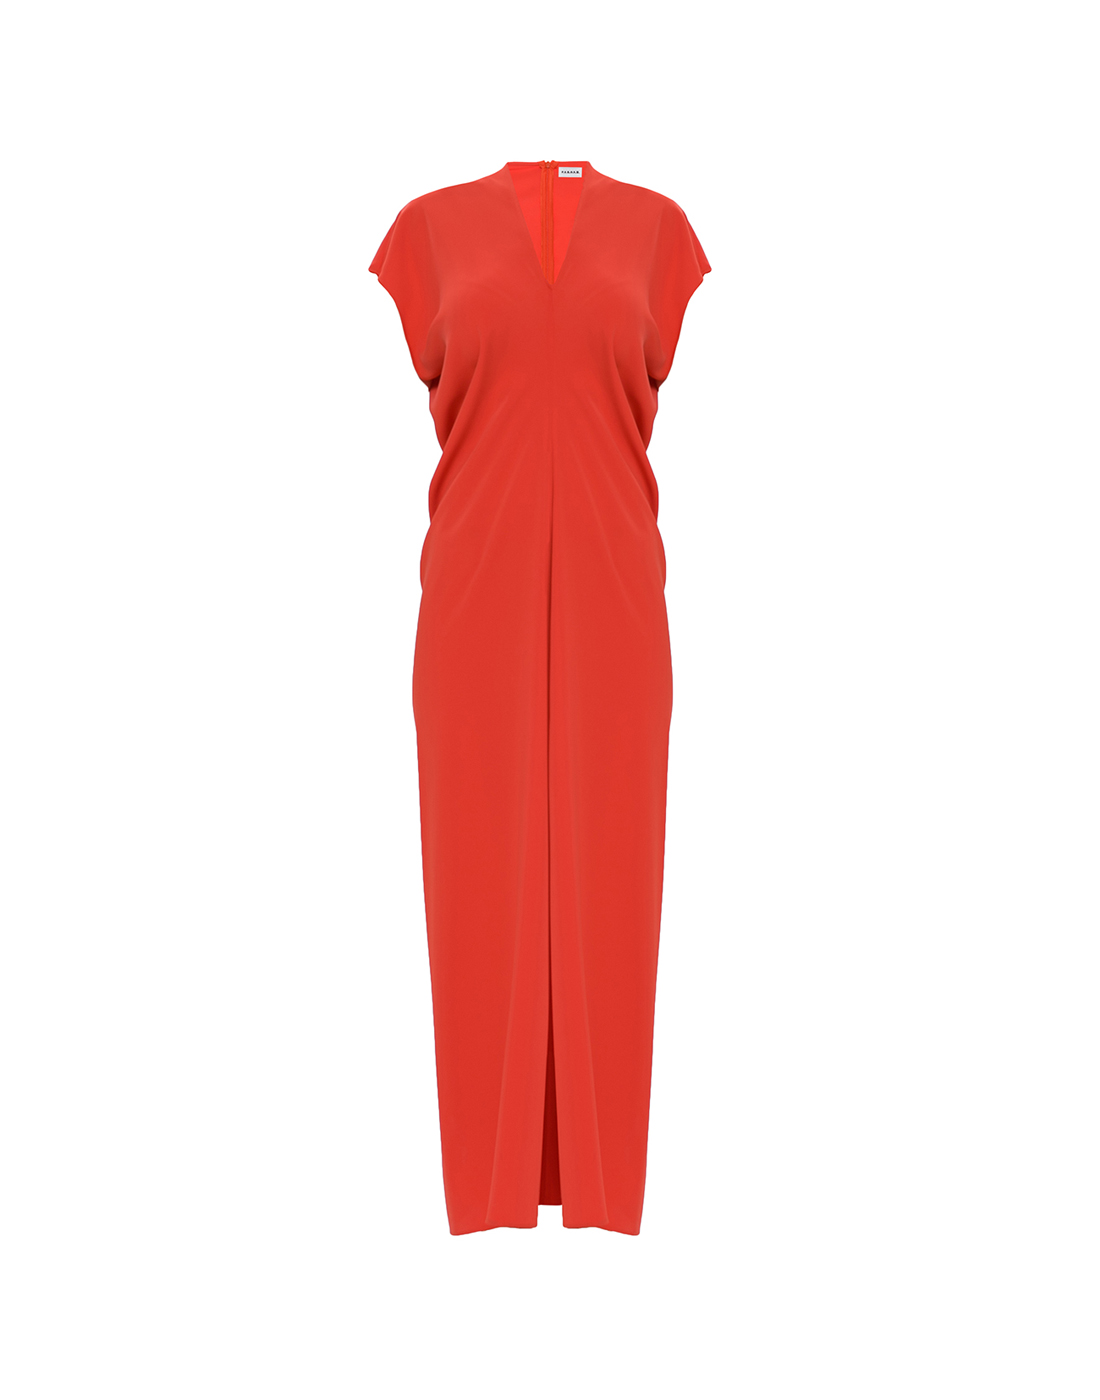 Платье красное женское P.A.R.O.S.H. SPANTY24/D725288/009-1